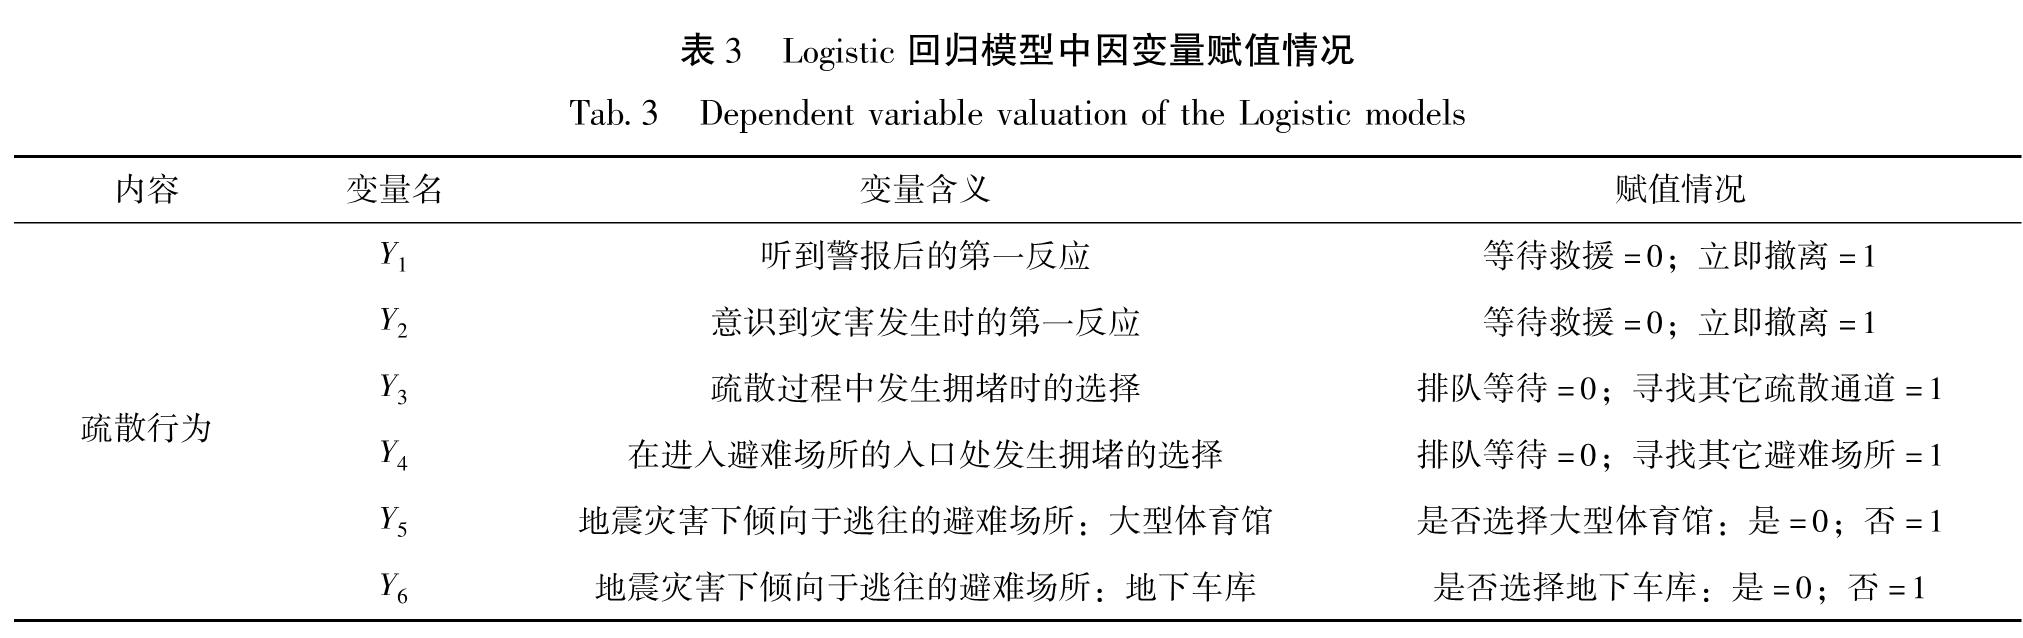 表3 Logistic回归模型中因变量赋值情况<br/>Tab.3 Dependent variable valuation of the Logistic models